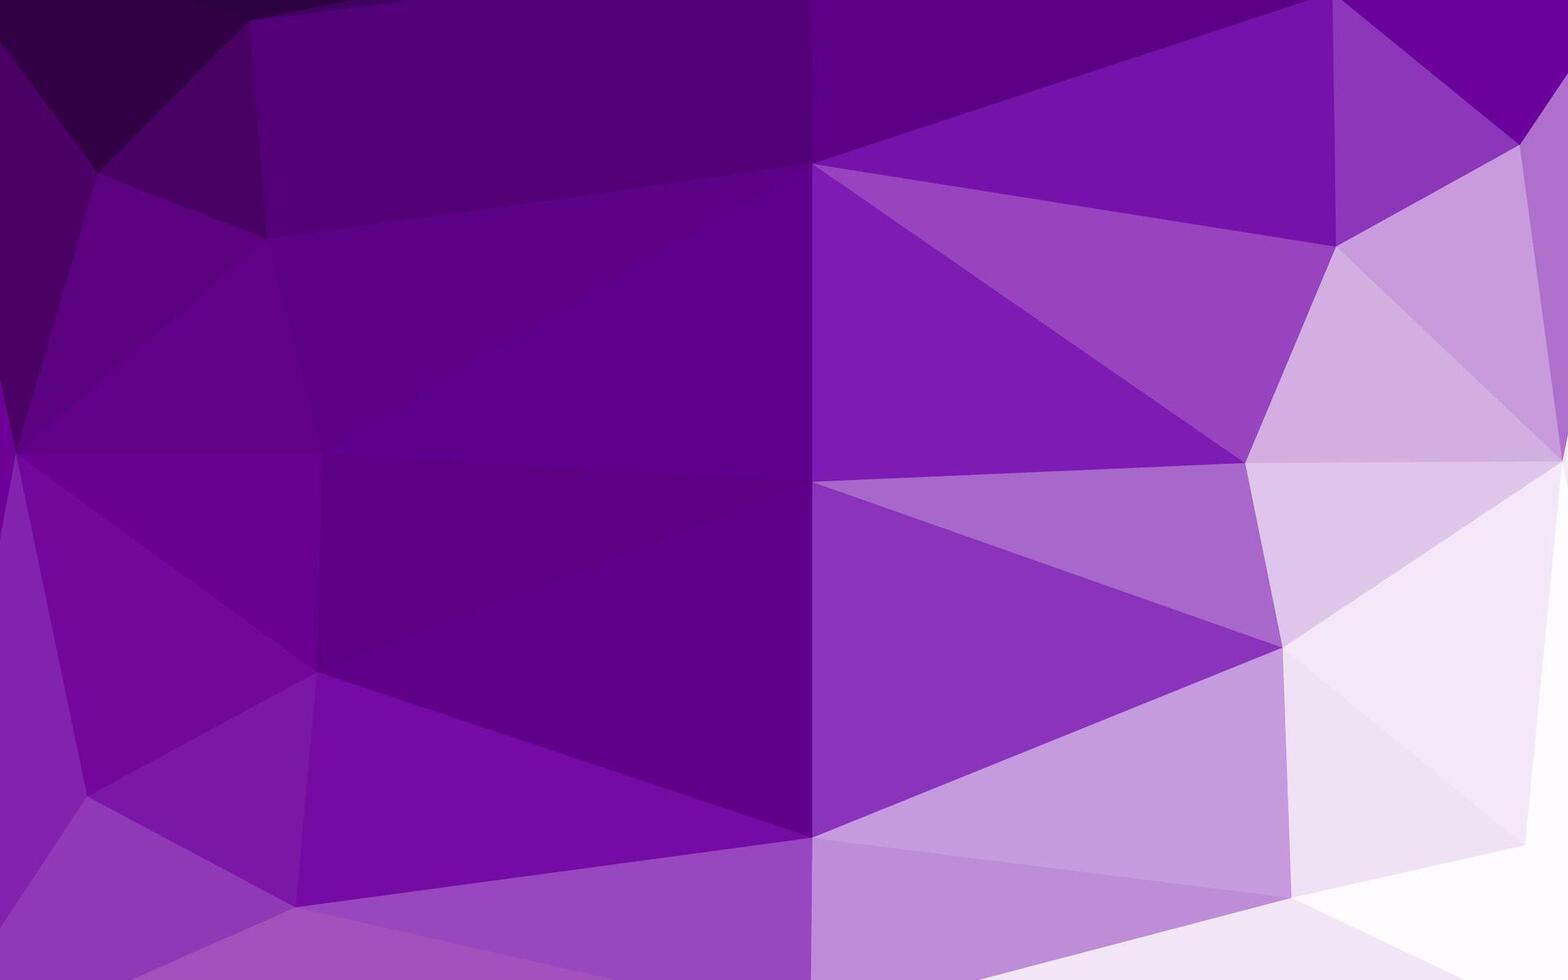 cubierta poligonal abstracta de vector púrpura claro.